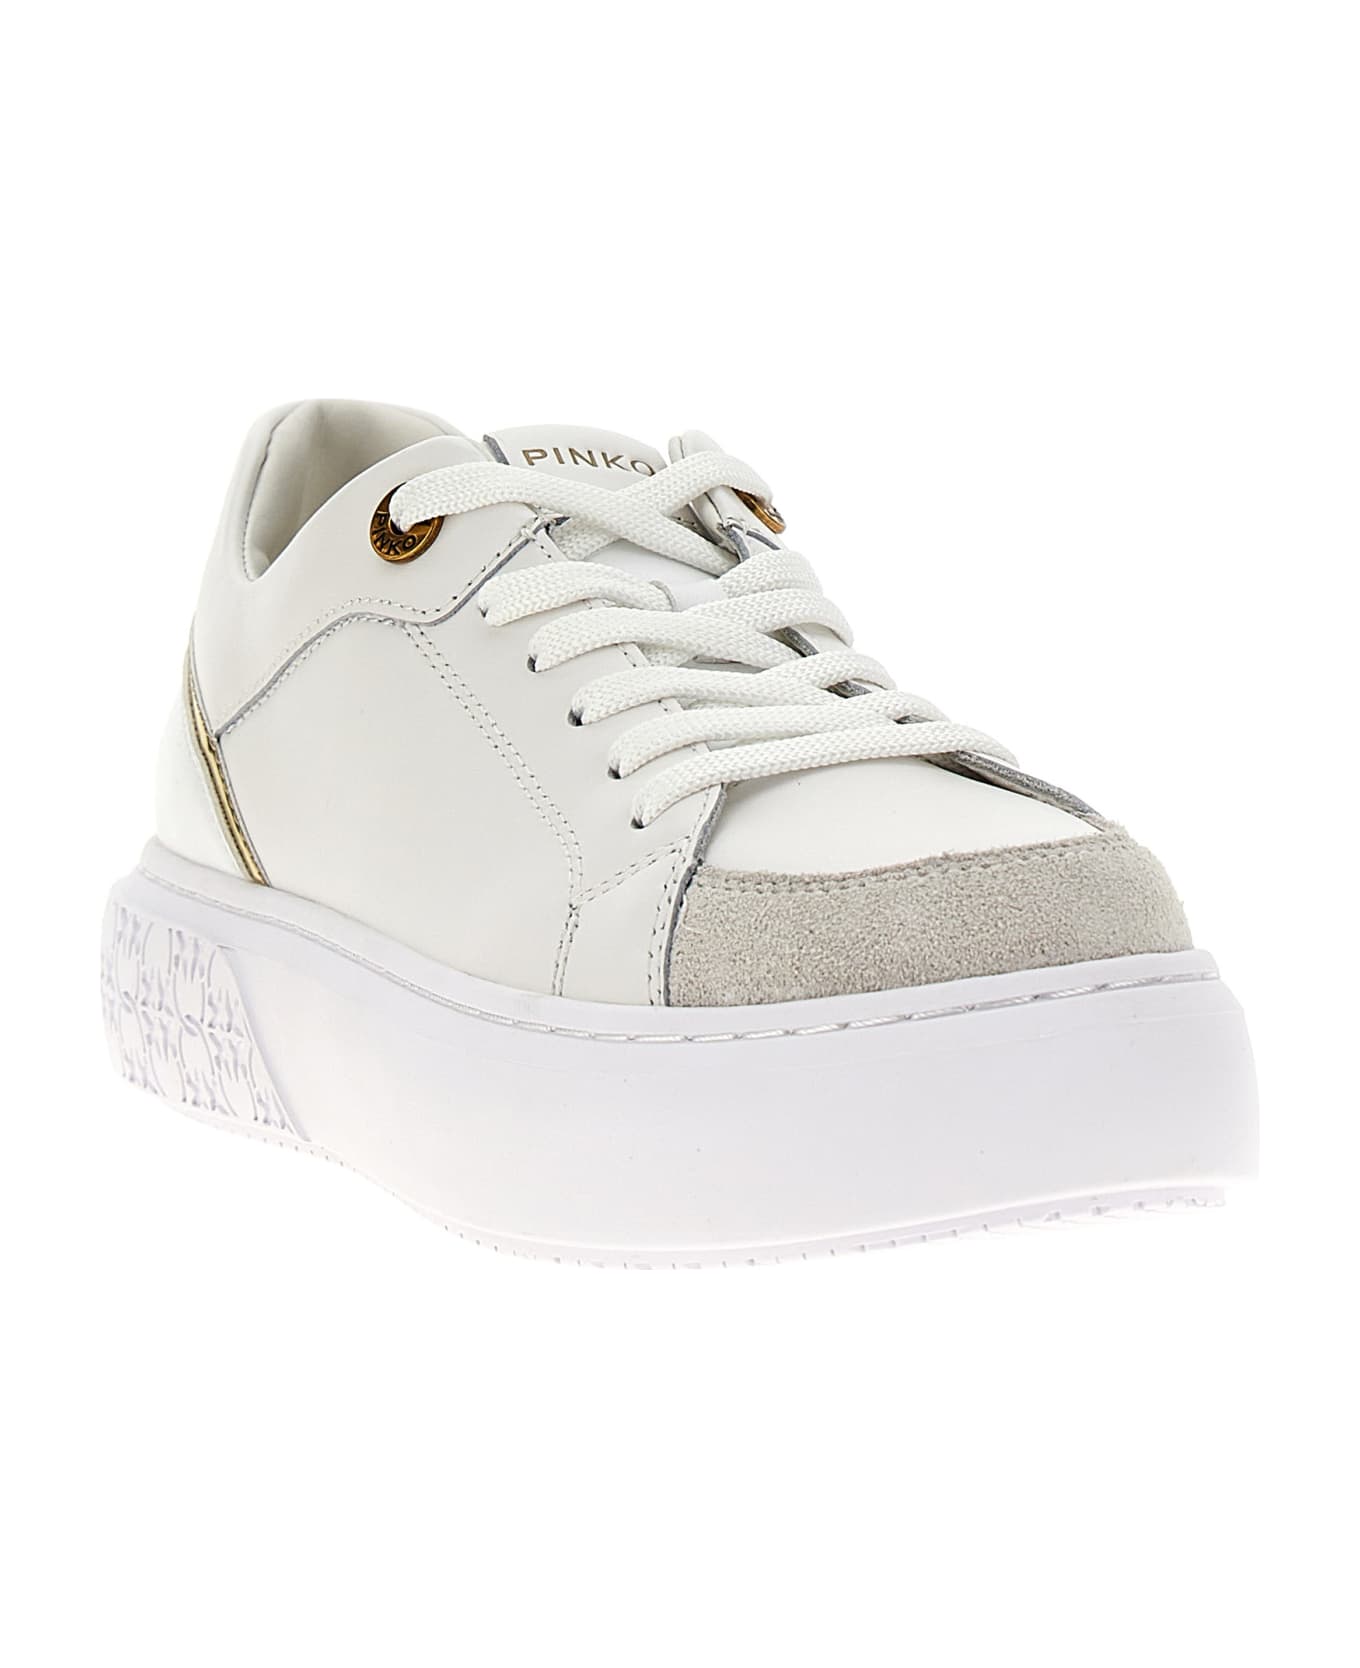 Pinko Yoko Sneakers - White